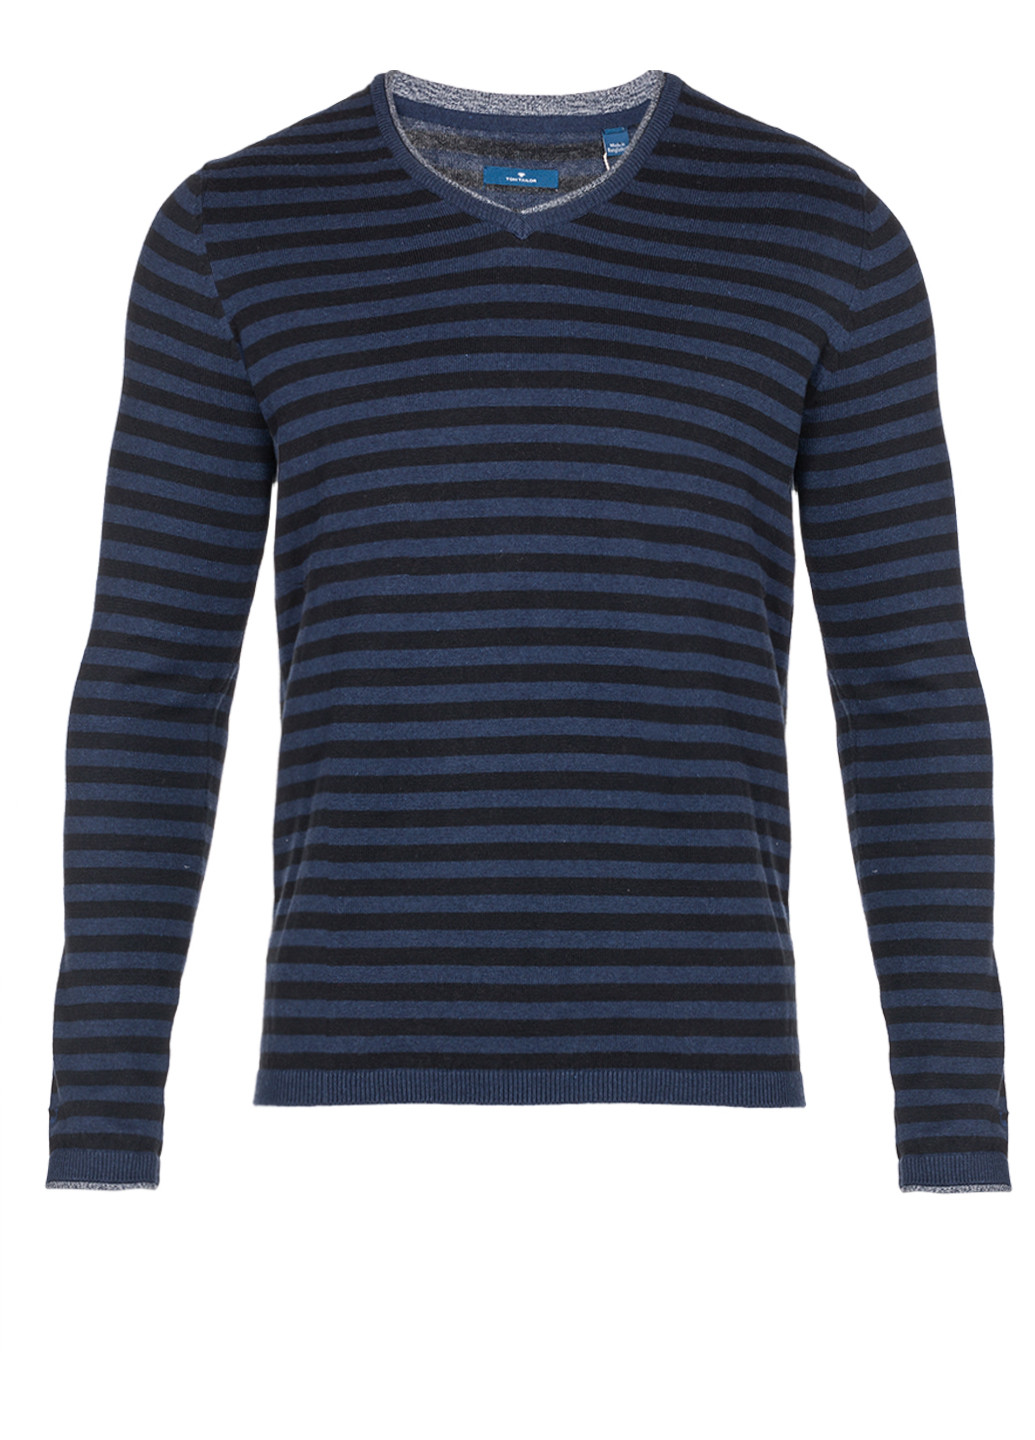 Синий демисезонный мужской синий свитер пуловер джемпер Tom Tailor